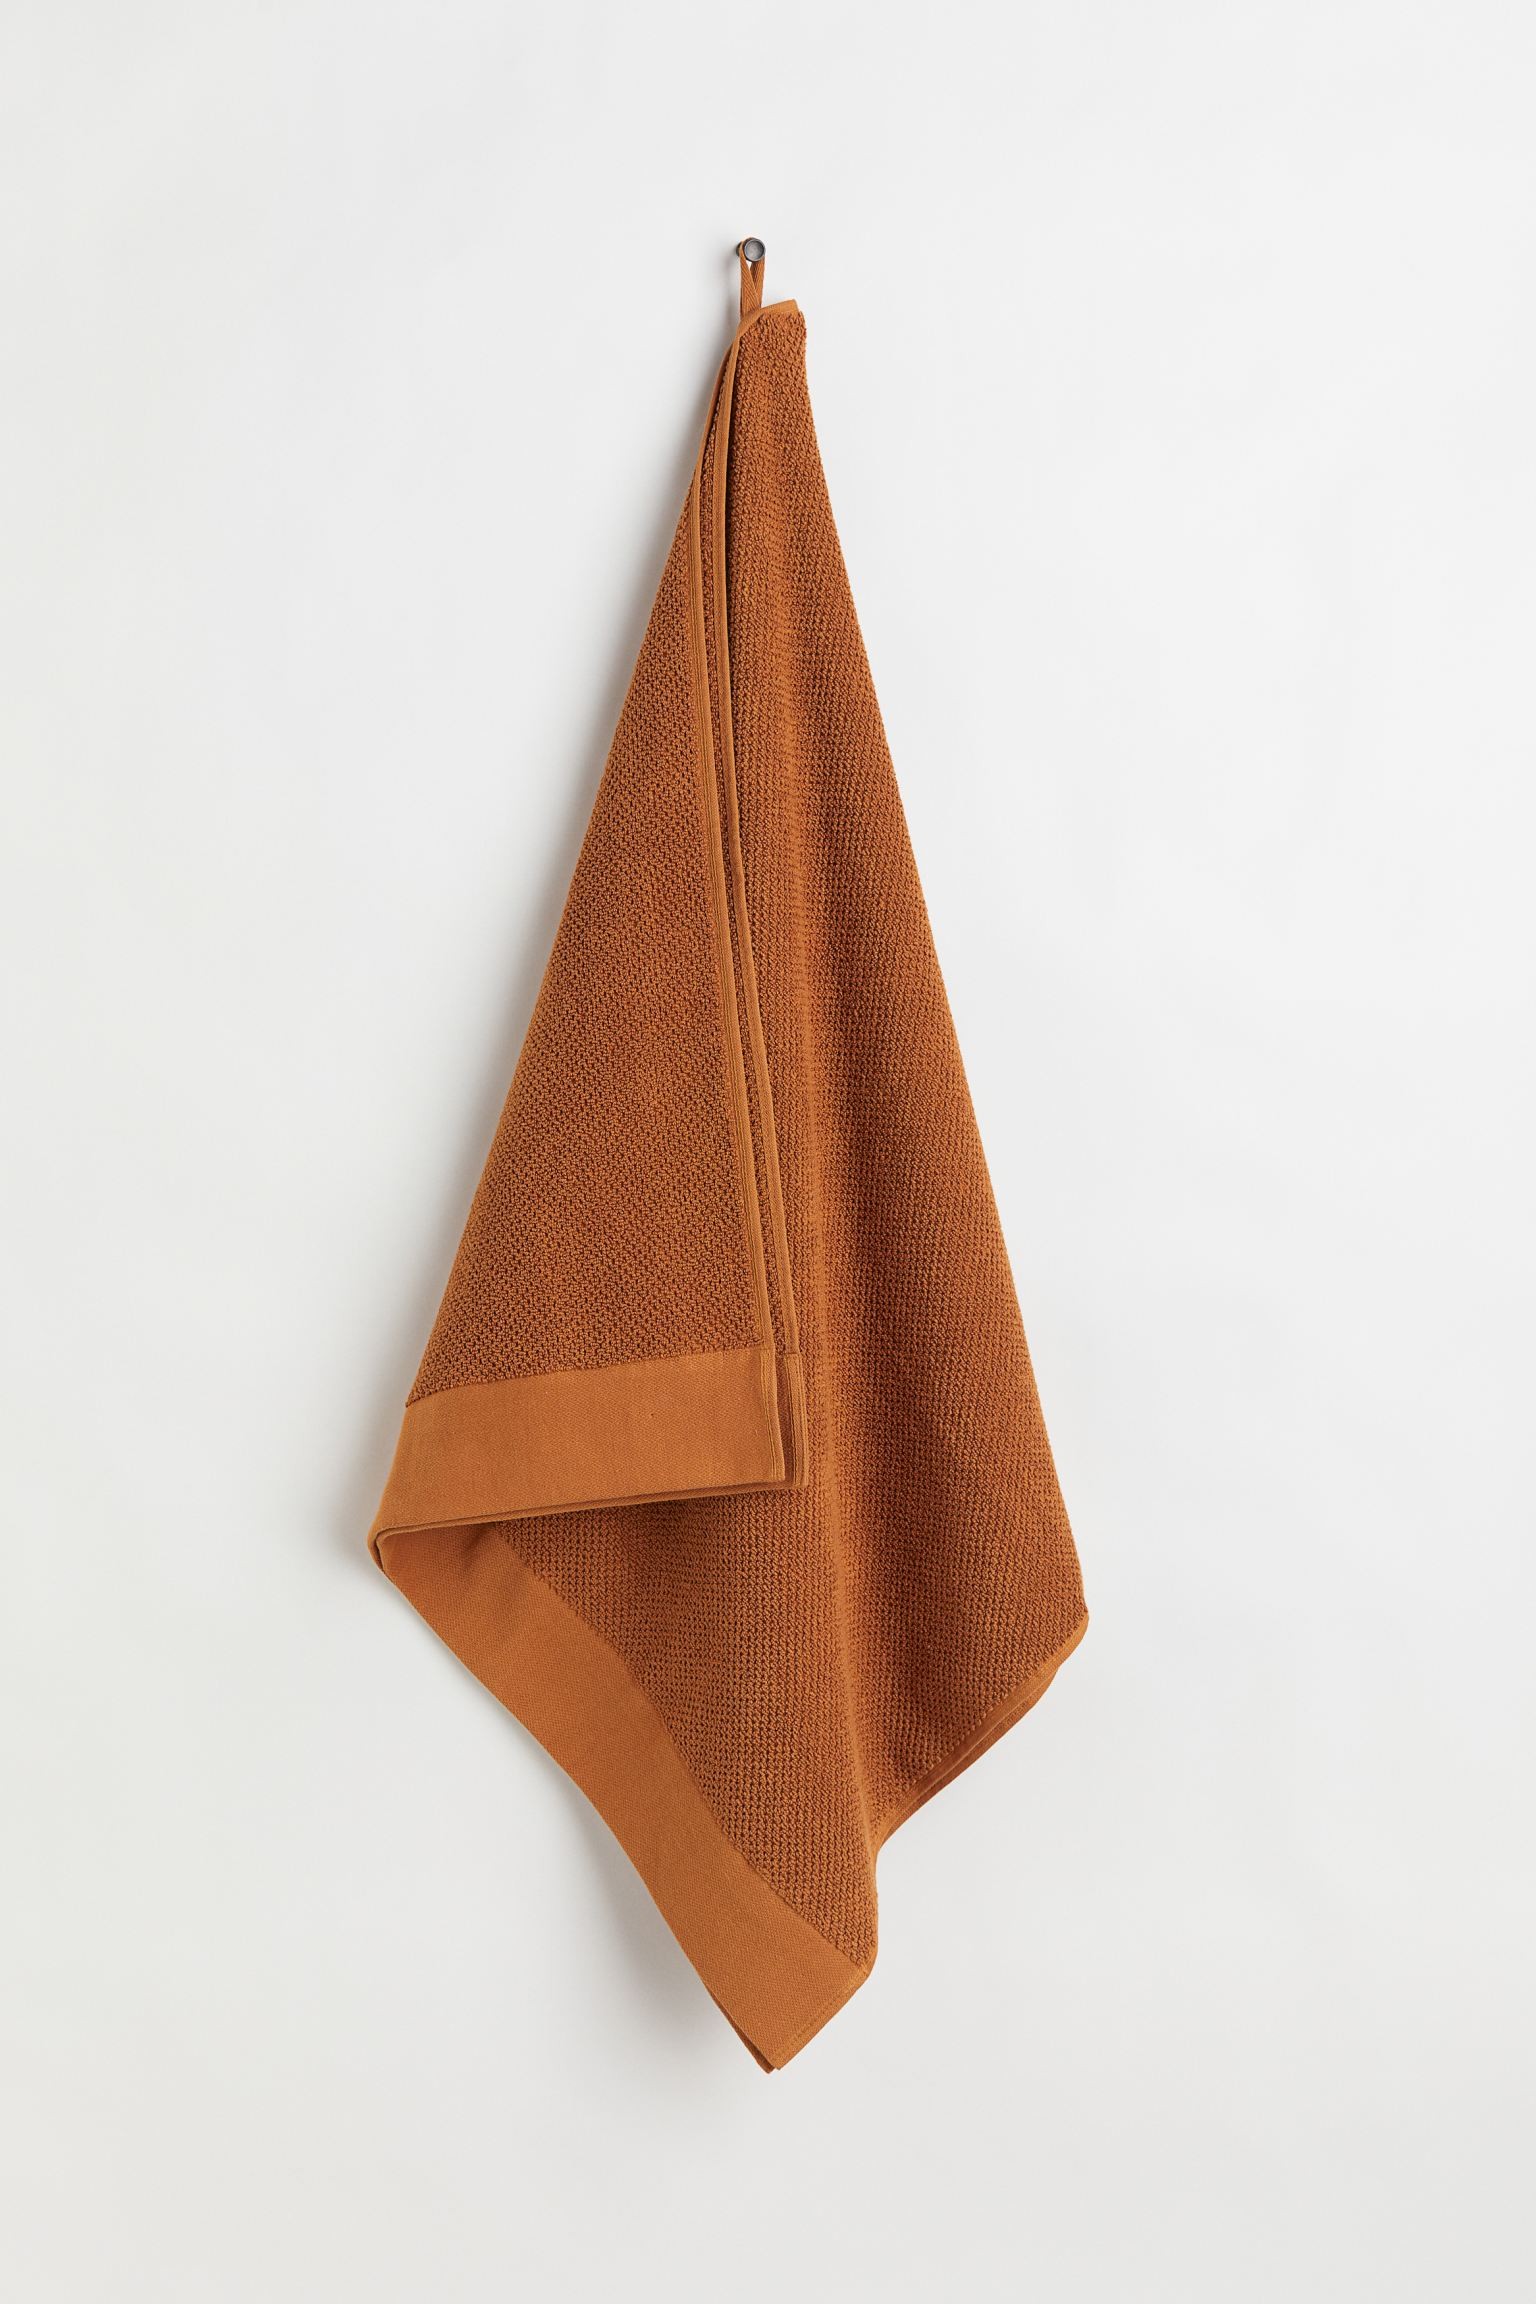 Махровий банний рушник, Коньяк коричневий, 70x140